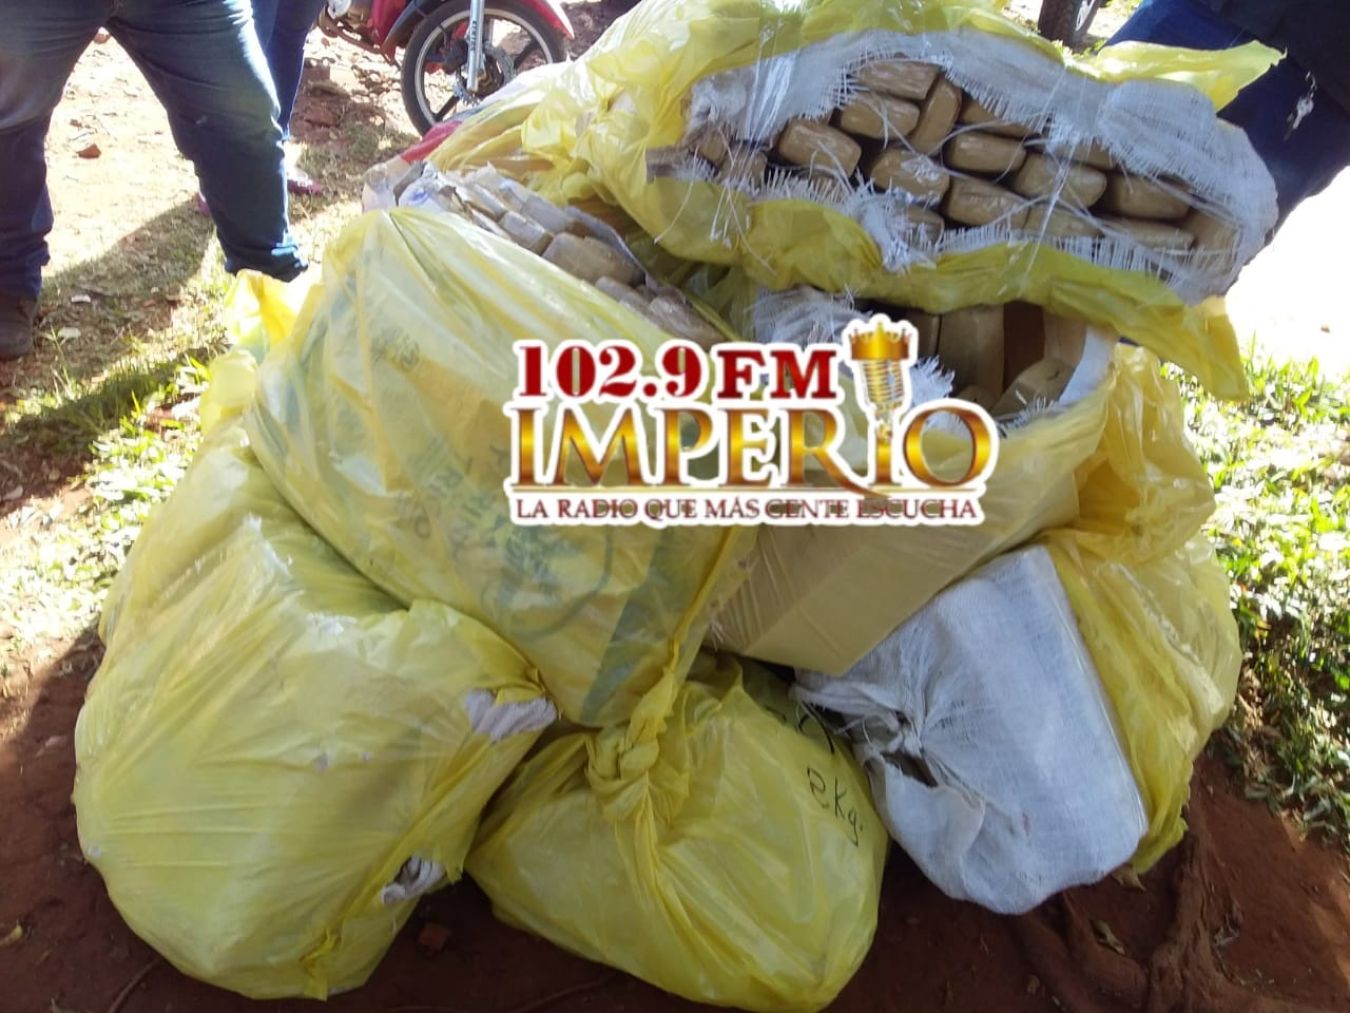 225 kilos de marihuana en 9 bolsas incautadas y un detenido en el barrio María Victoria